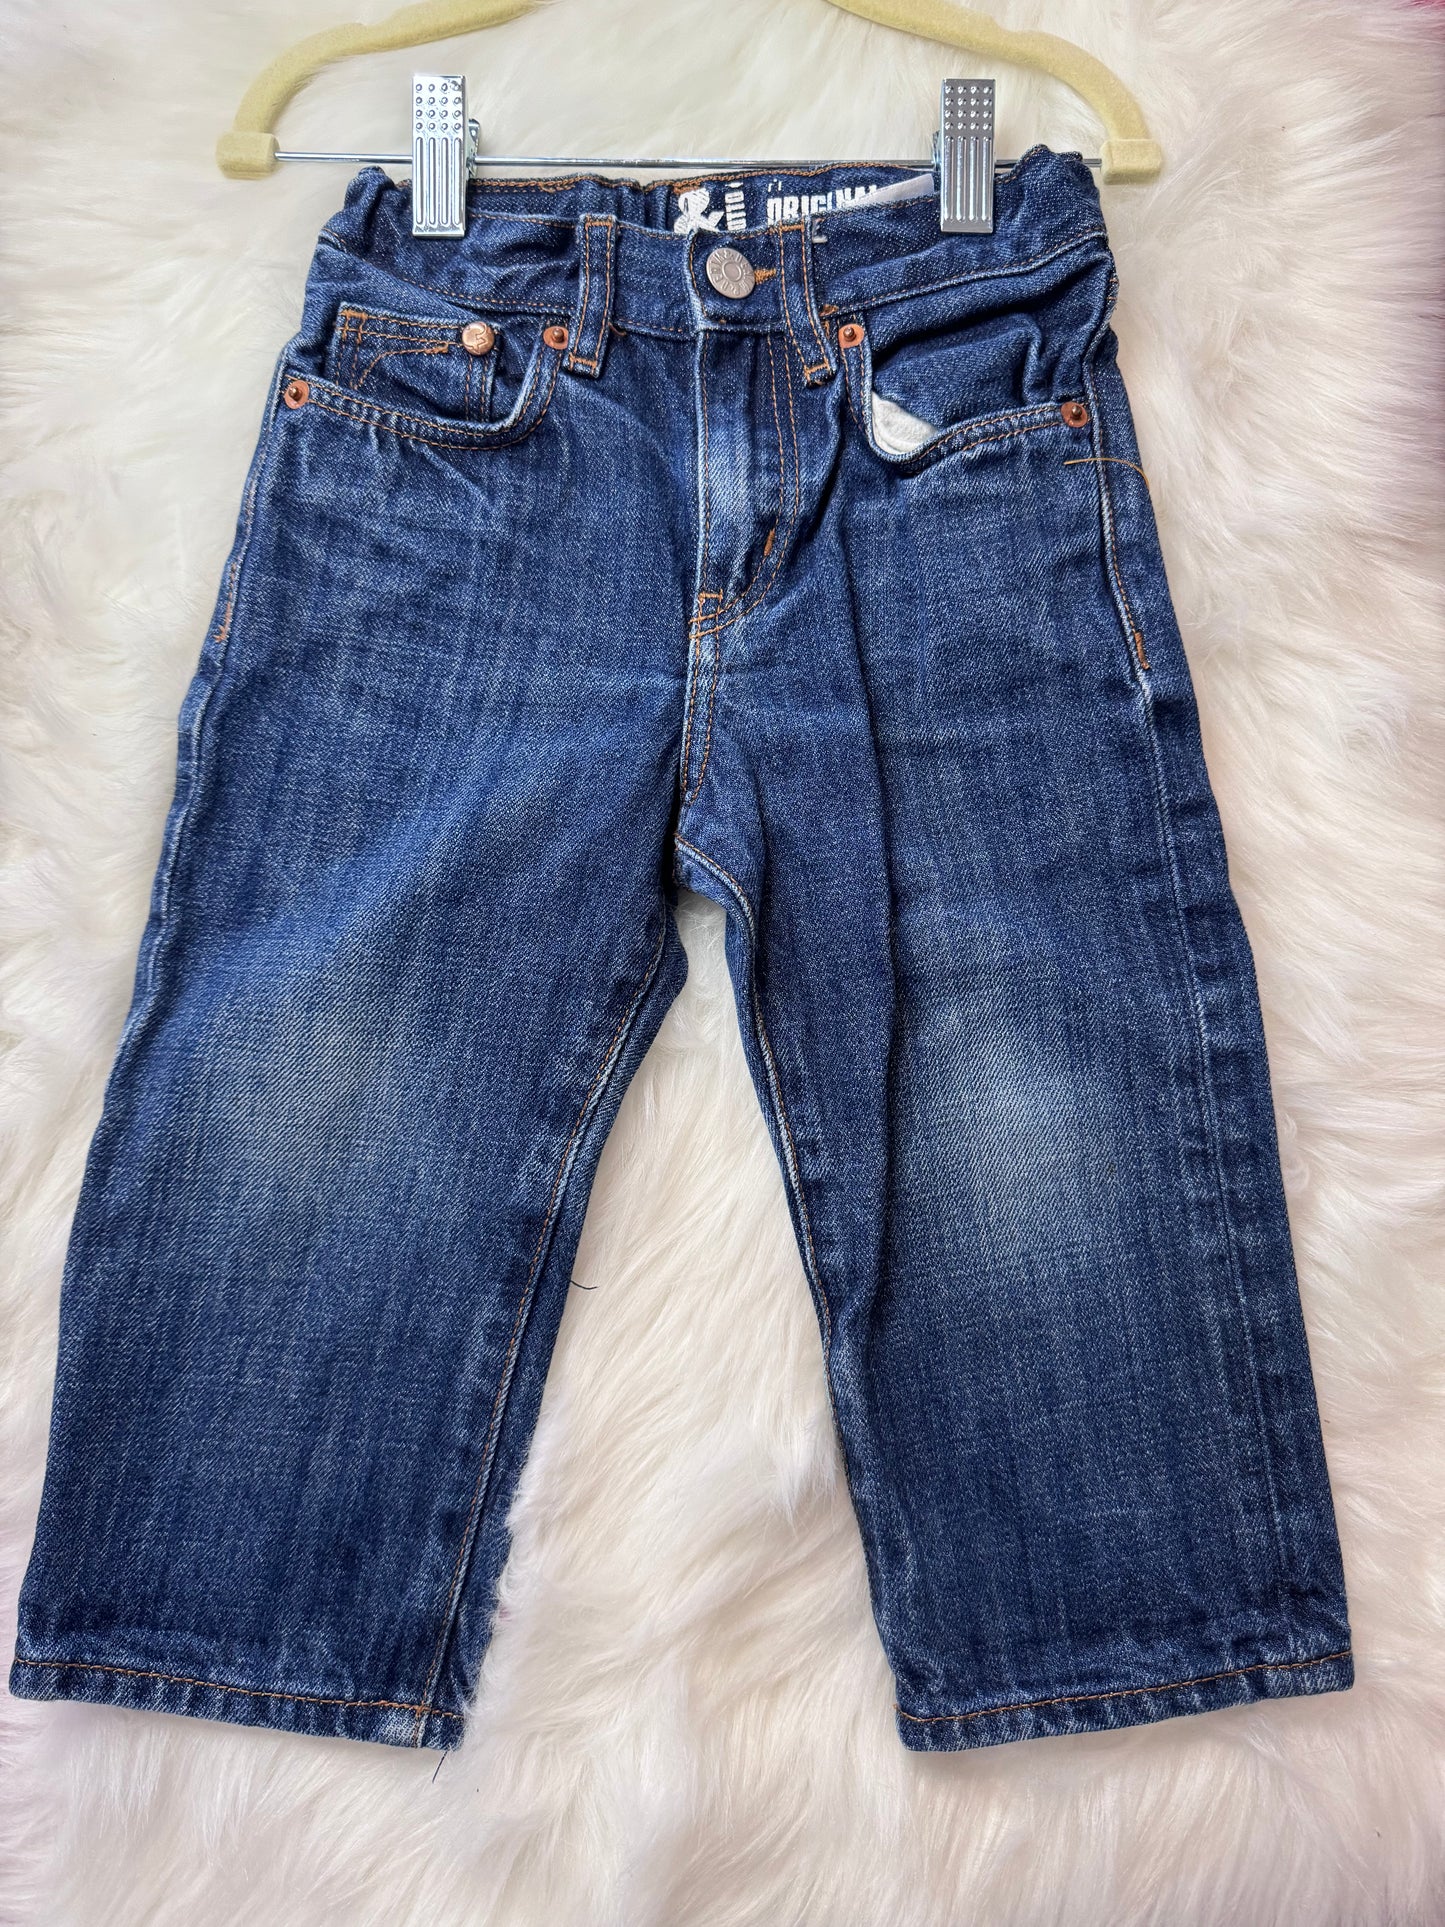 Blue Jeans - 1.5/2T